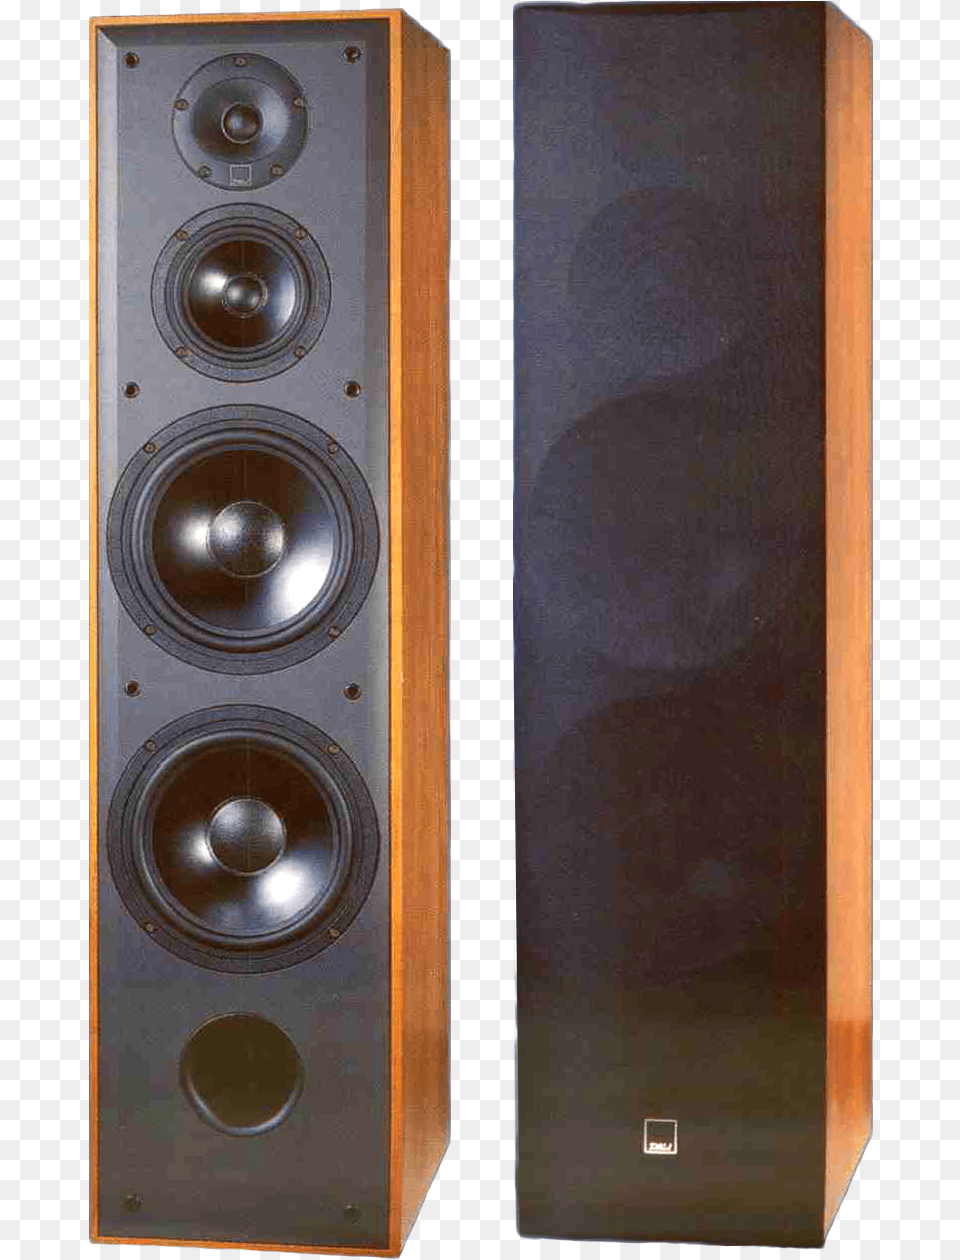 Blue 8008 Speakers Dali Blue, Electronics, Speaker Png Image